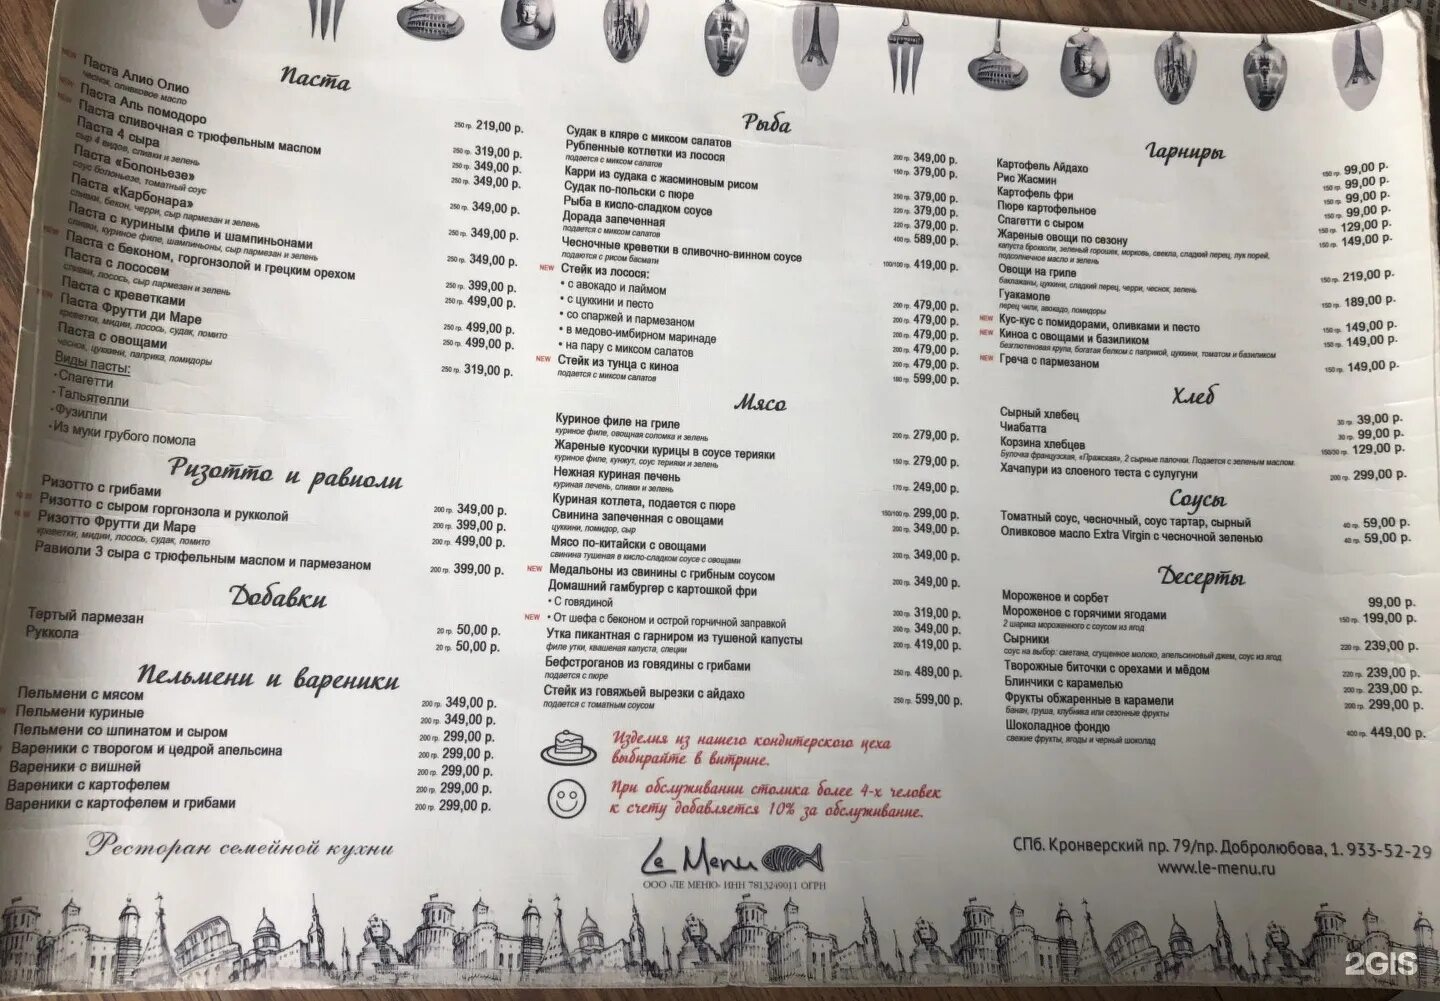 Ле меню ресторан СПБ. Меню кафе на горнолыжном курорте. Фото меню в ресторанах острова мечты в Москве. Кафе Андерсон Домбай меню. Семейное кафе меню